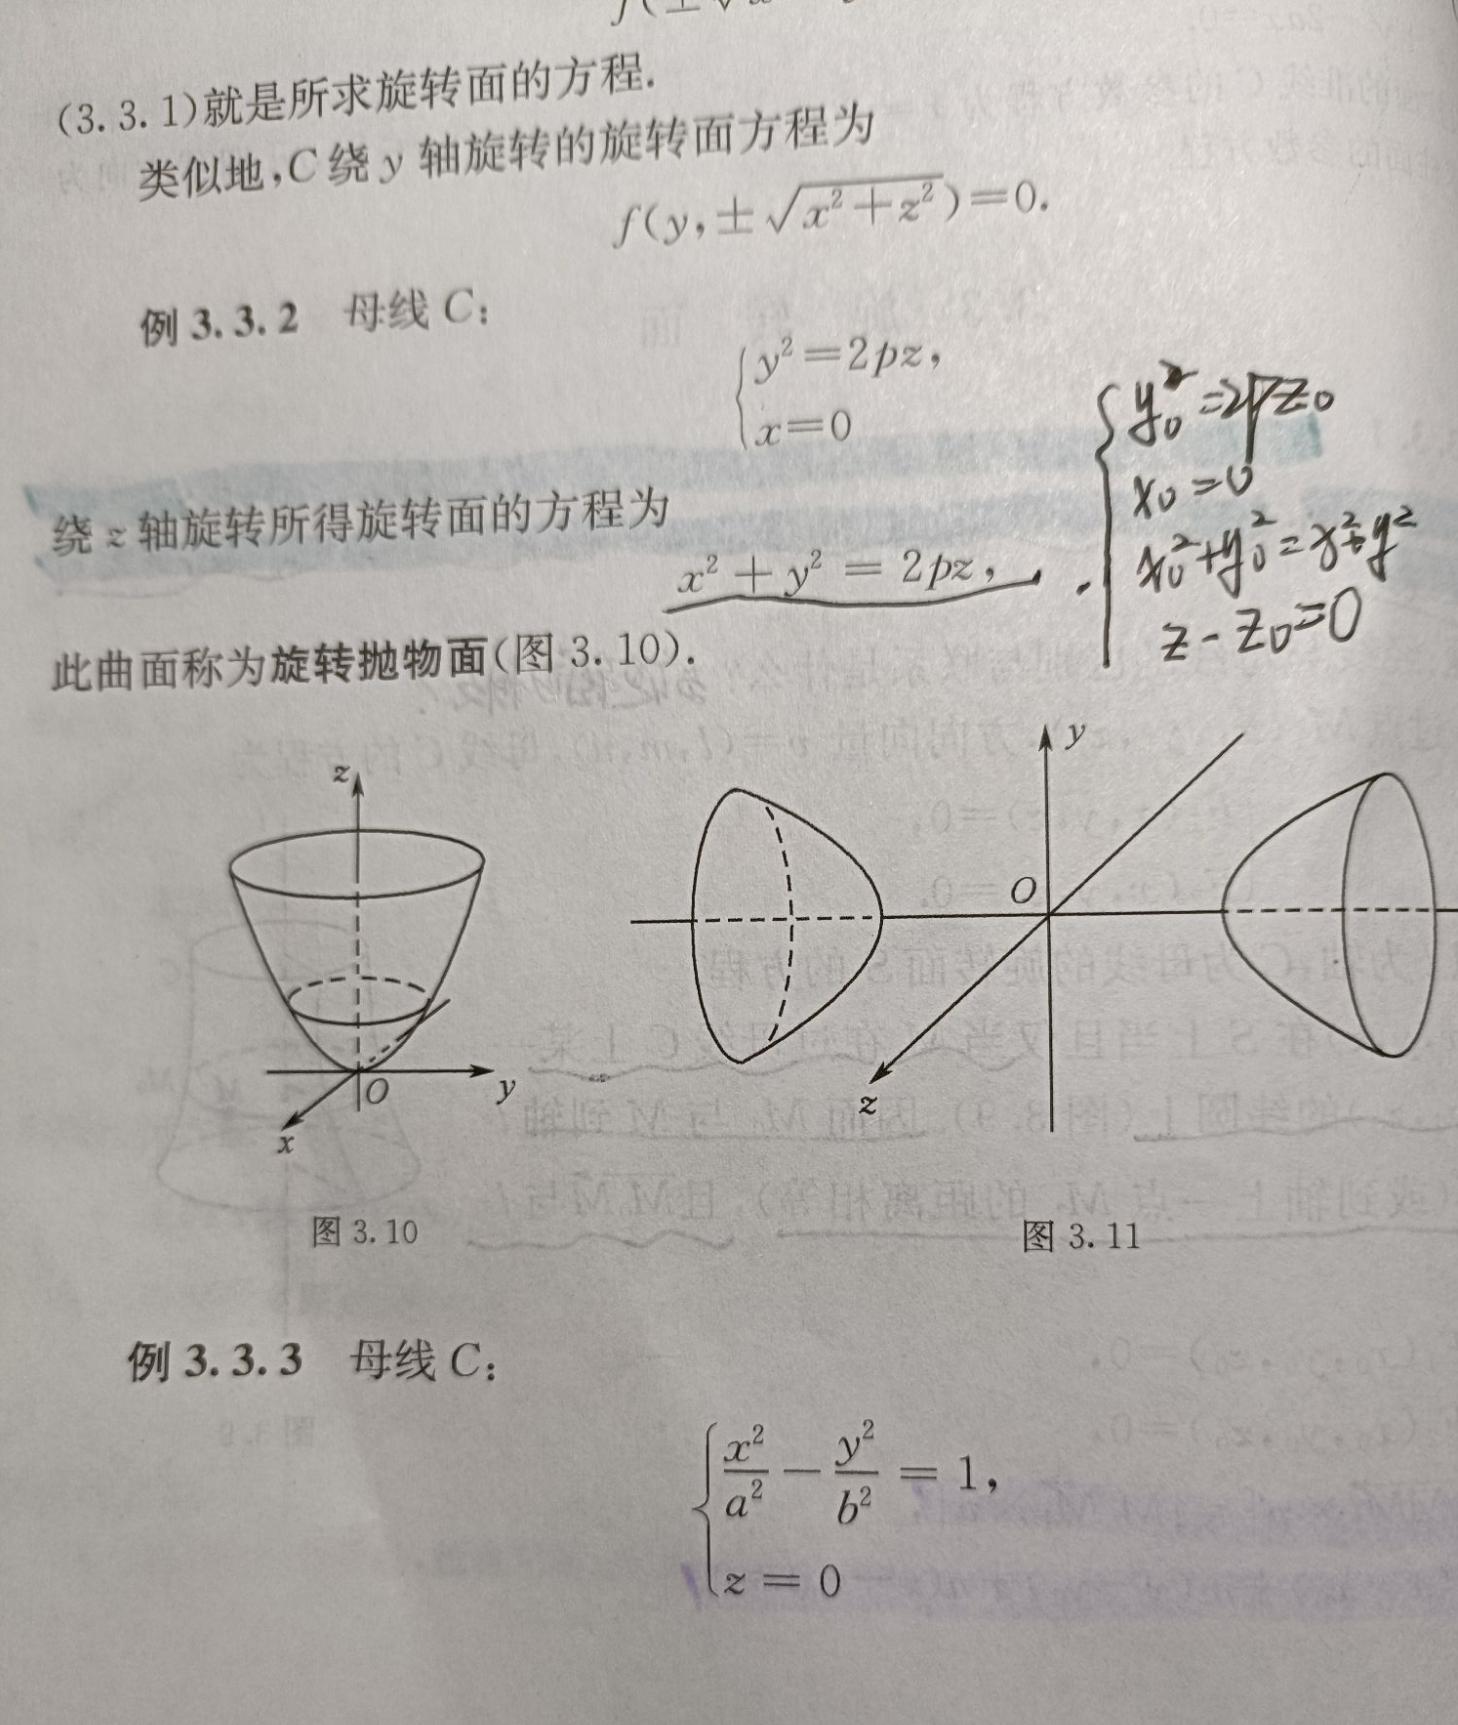 椭圆抛物面和双曲抛物面的方程怎么推导出来的? 